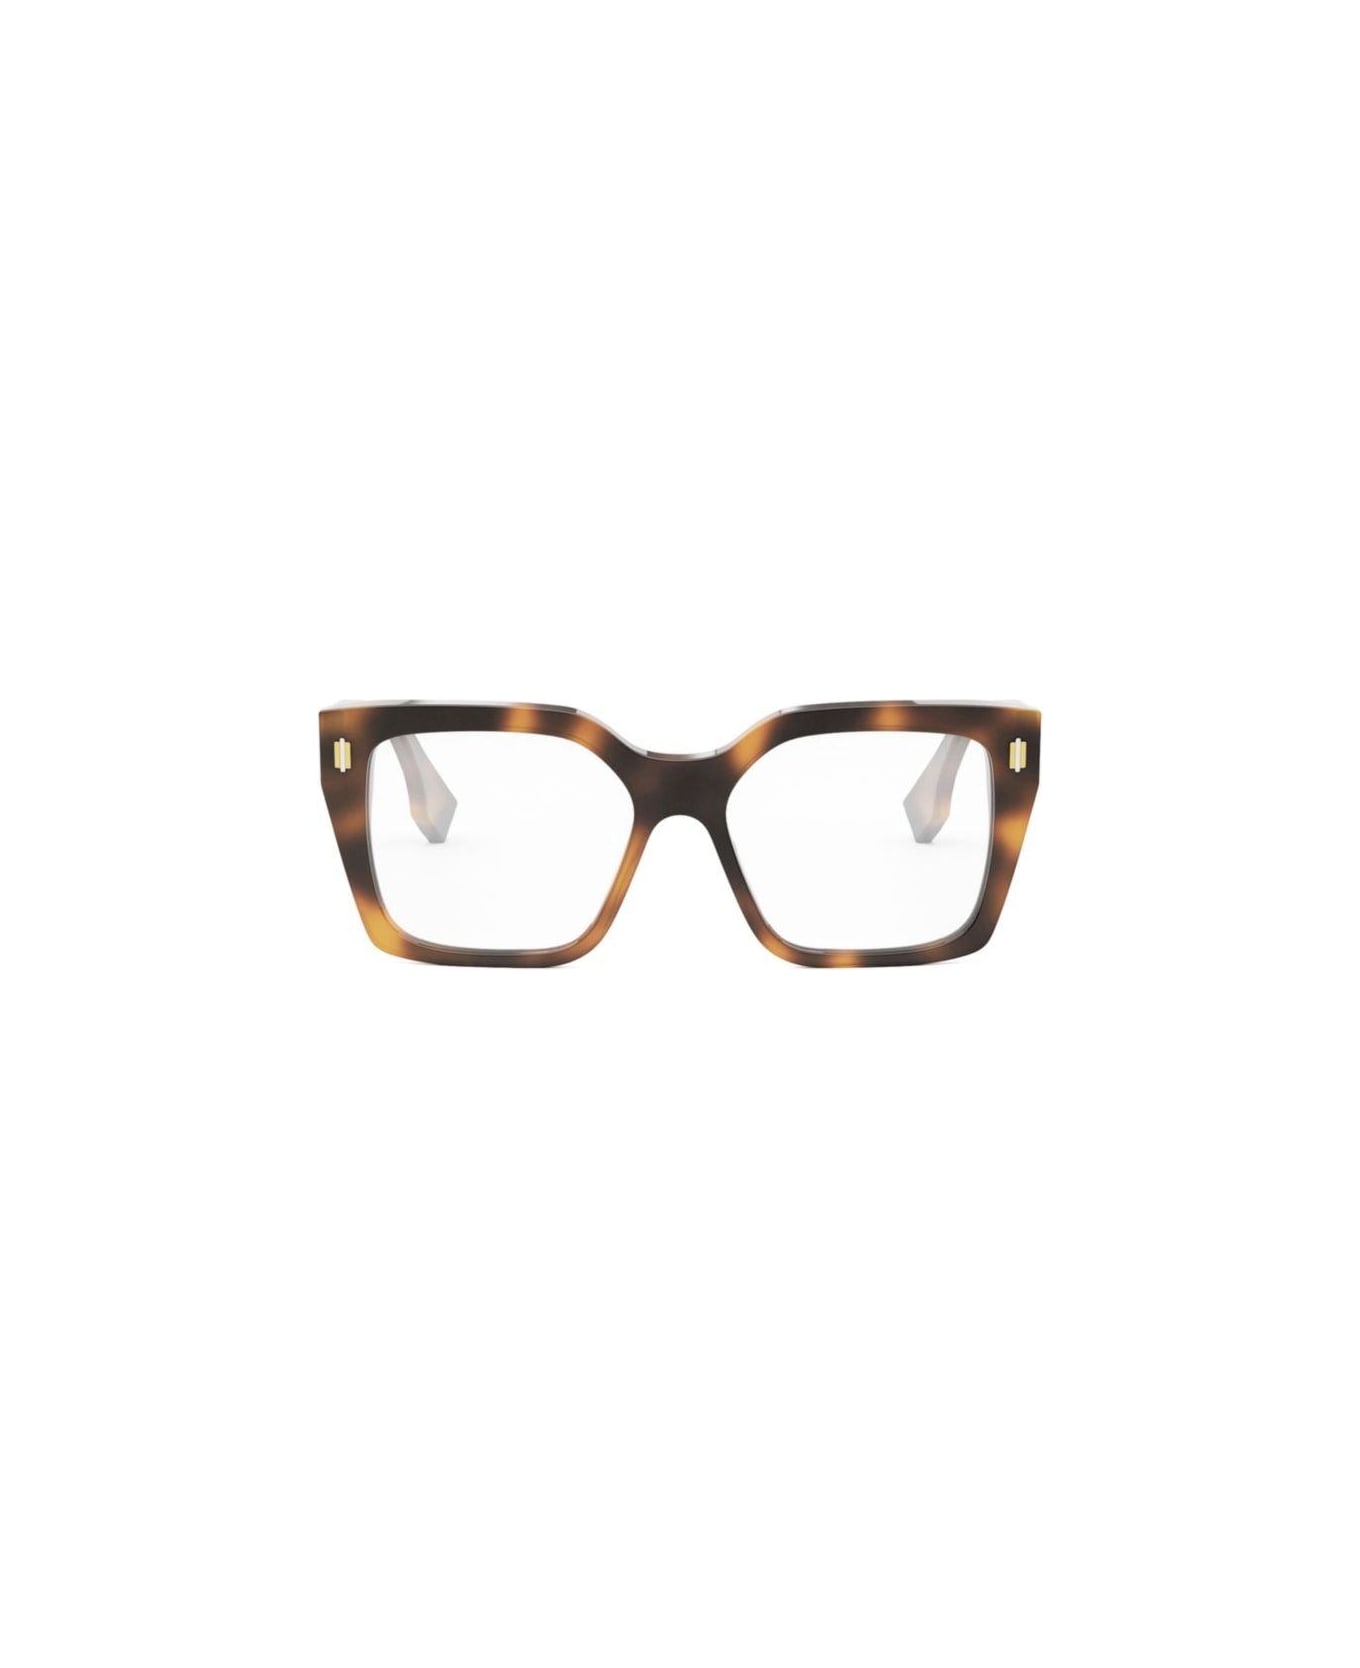 Fendi Eyewear Square Frame Glasses - 053 アイウェア